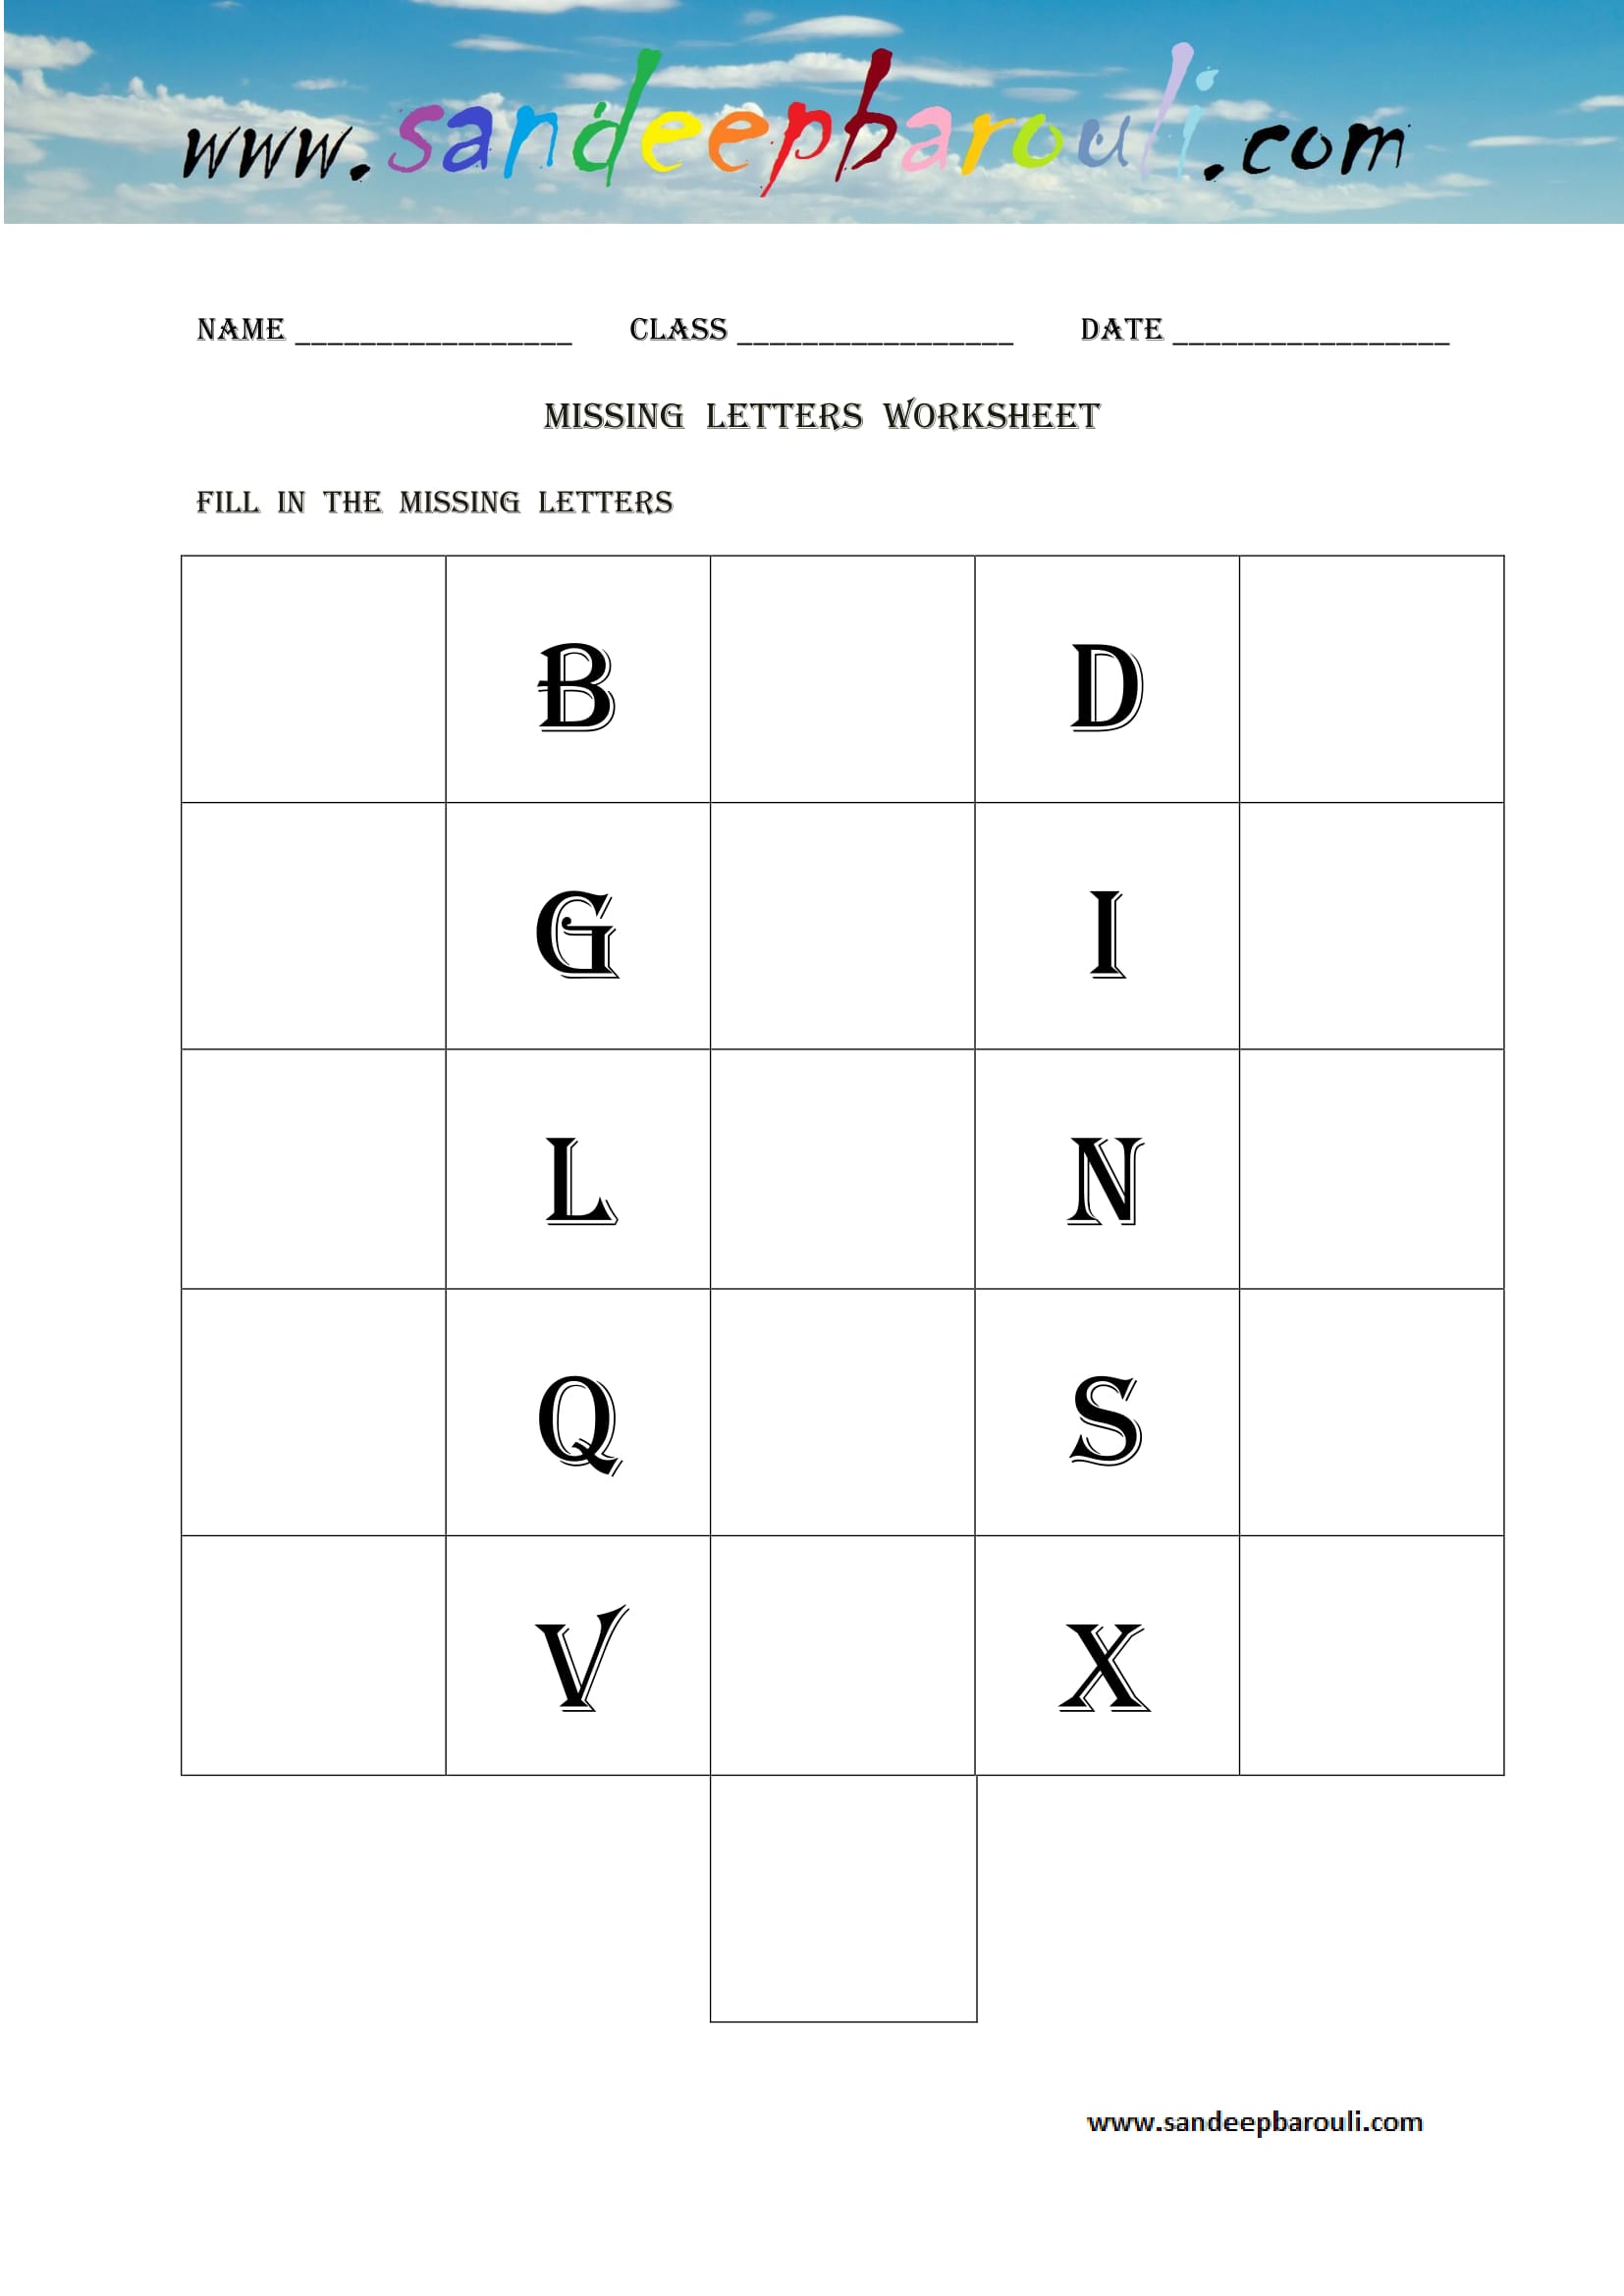 Missing letters Worksheet (7)